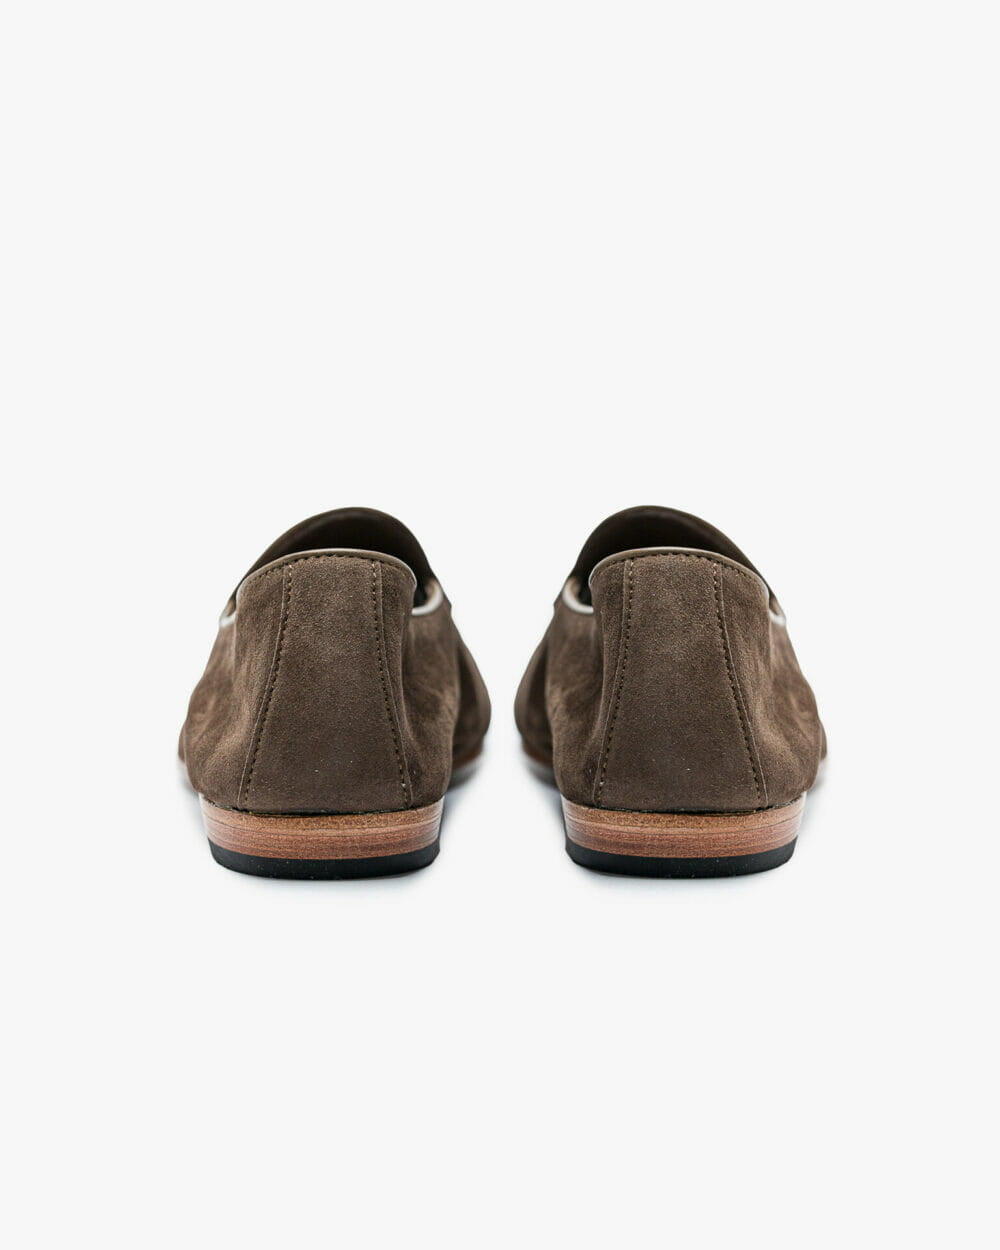 Belgian-d-ls-fandango-bronze-suede-heel